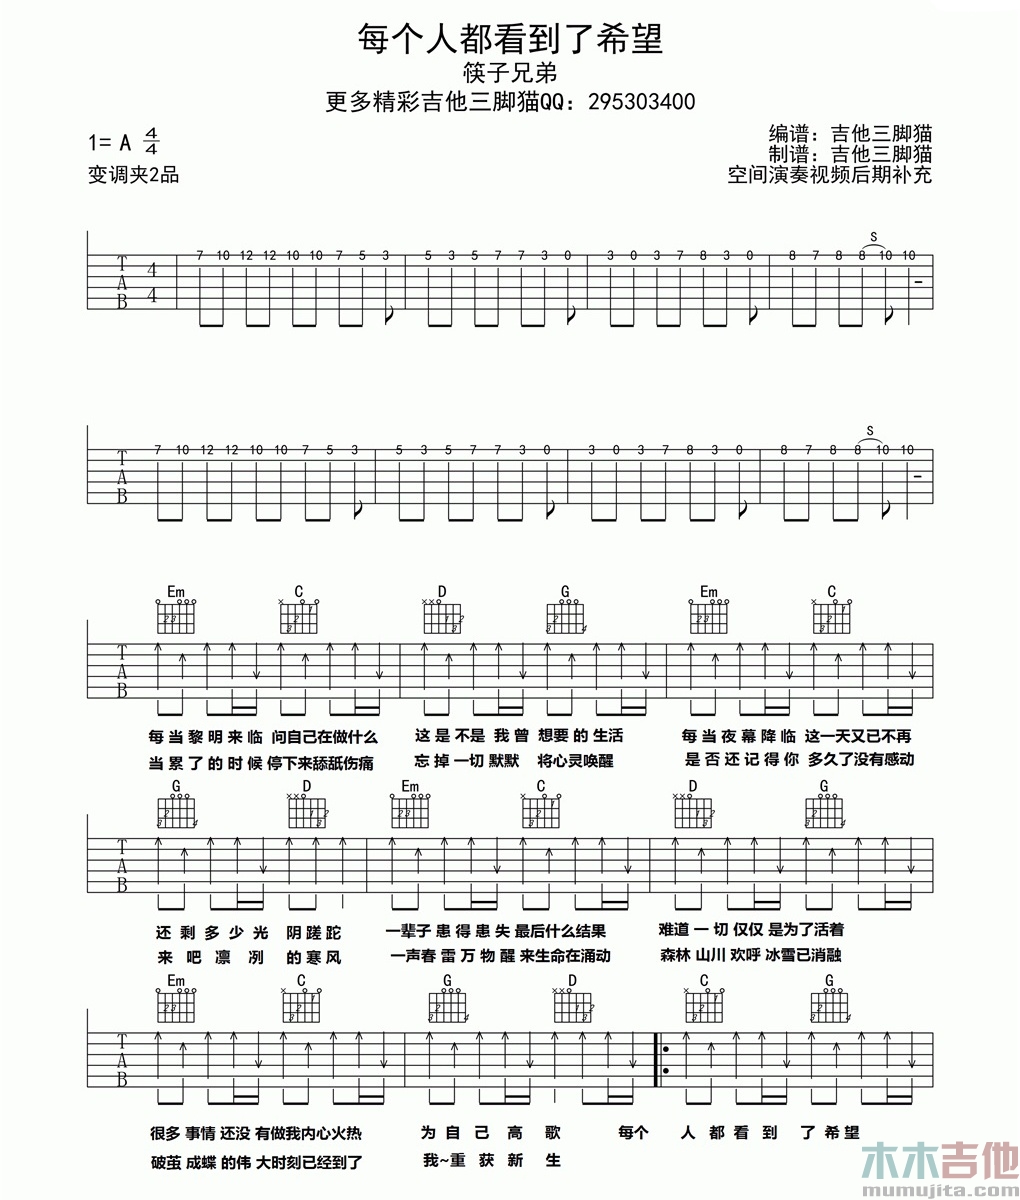 筷子兄弟《每个人都看到了希望》吉他谱-Guitar Music Score